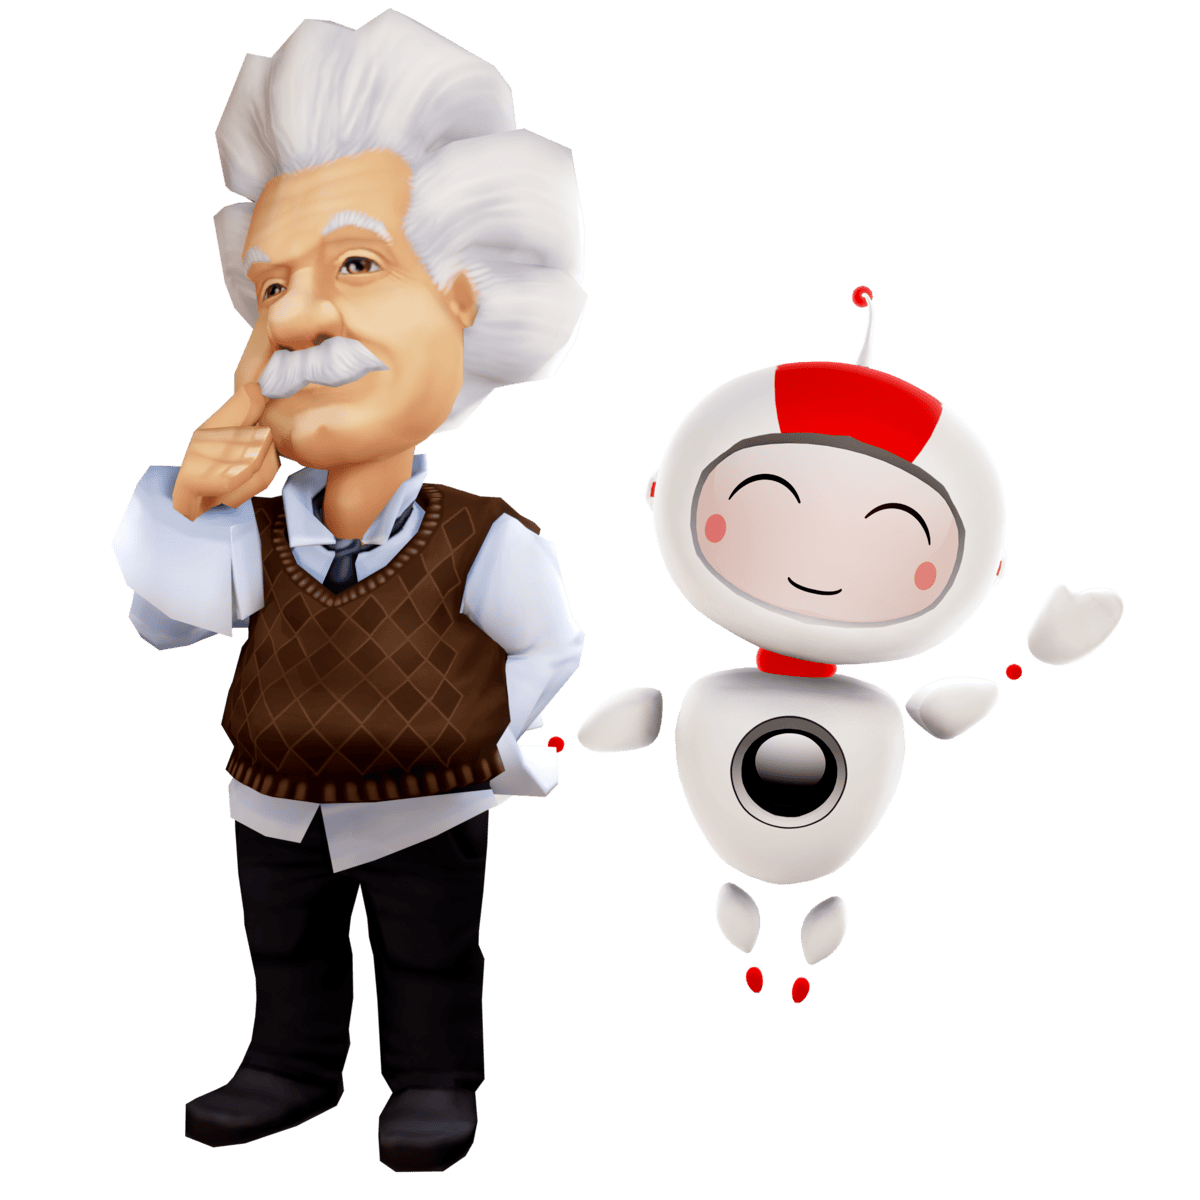 Einstein and Robo